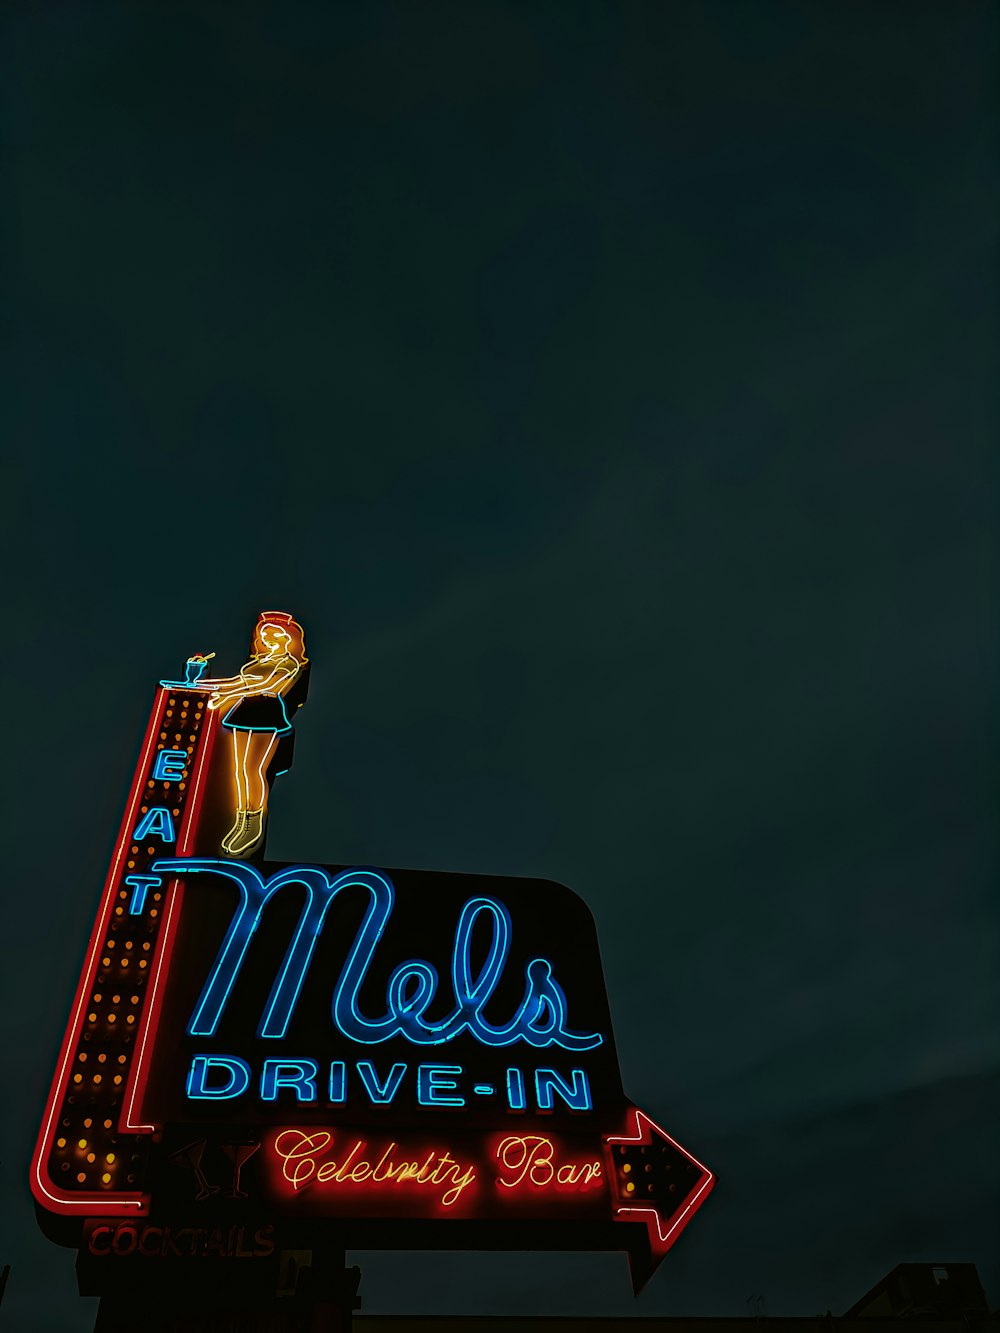 Une enseigne au néon qui dit Mels Drive - devant un immeuble